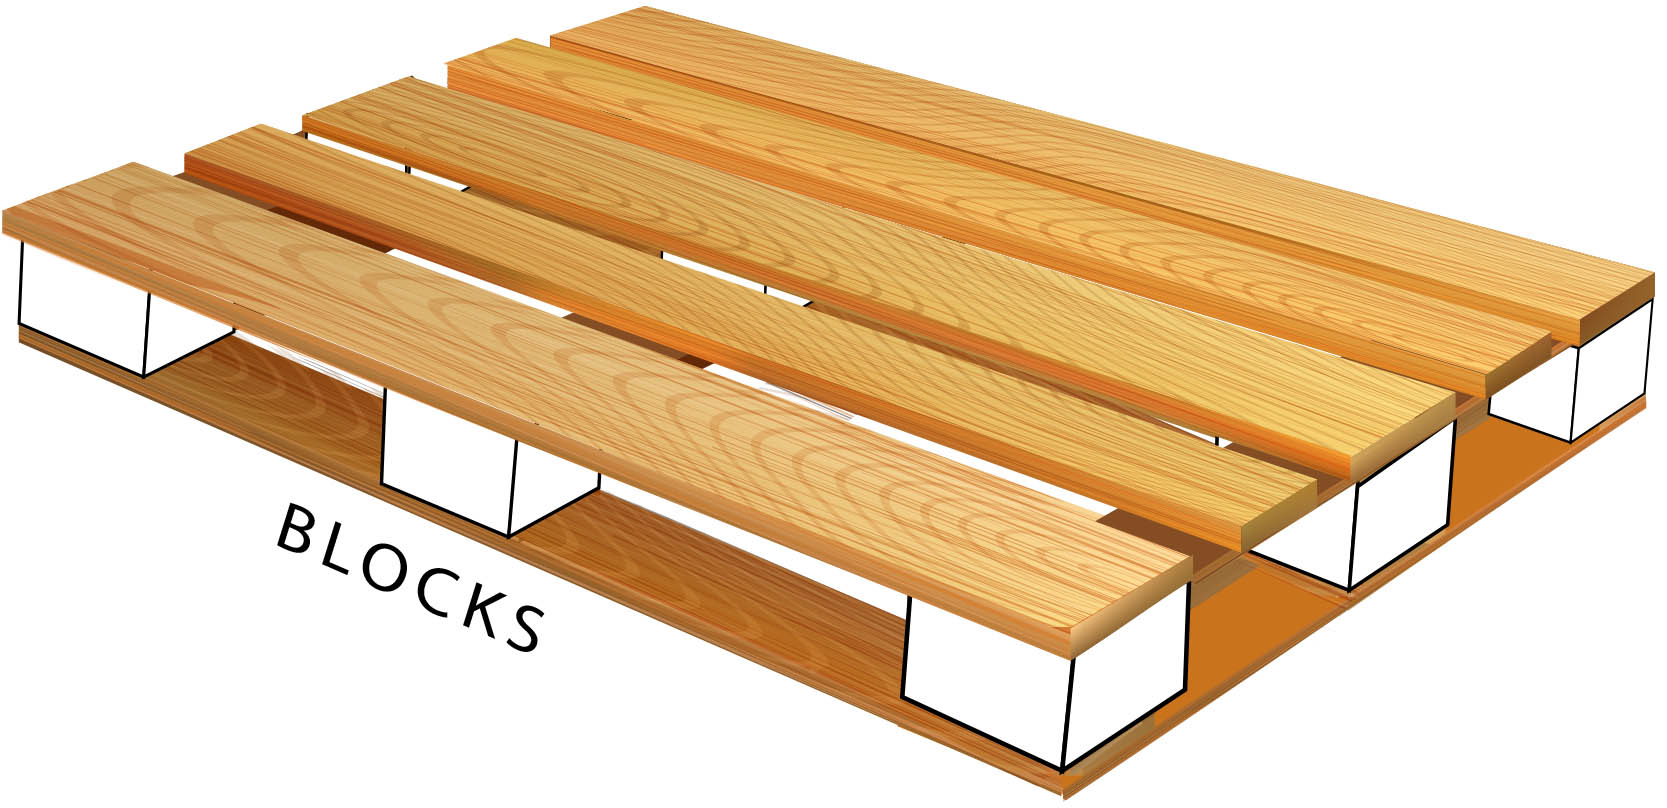 Wooden Block Pallet